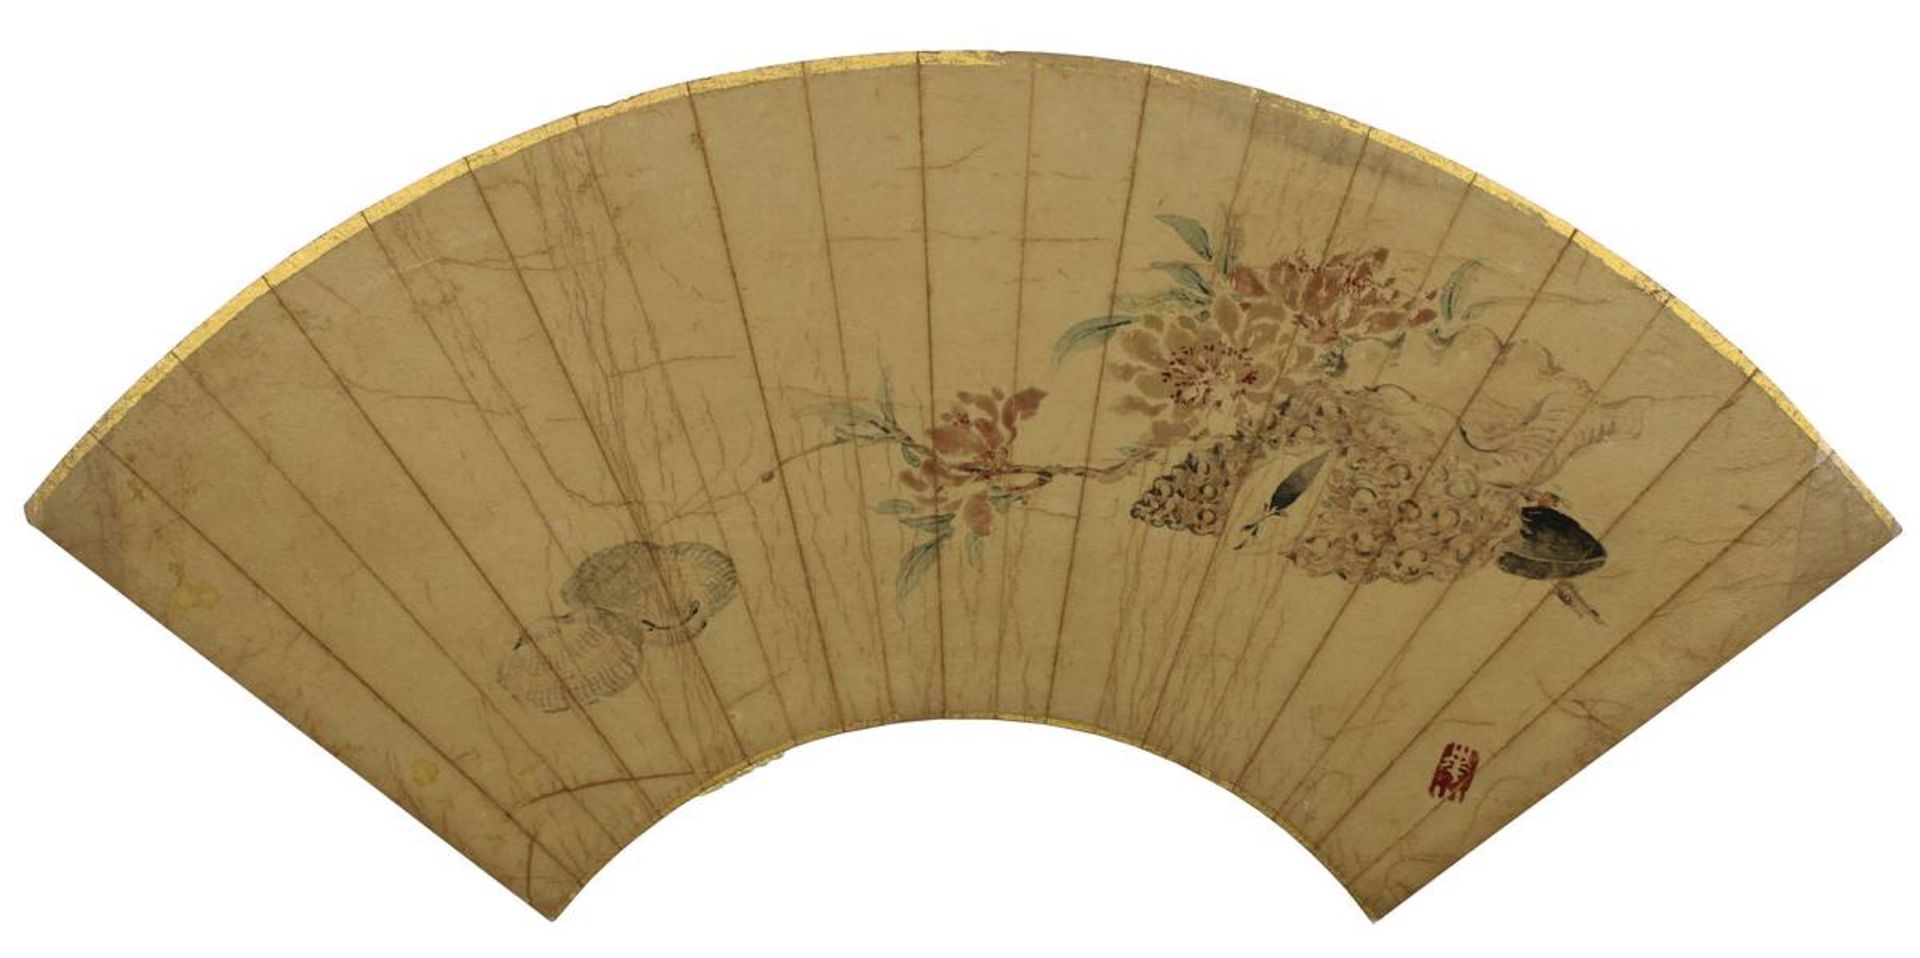 2 bemalte japanische Faltfächerblätter, jew. unter Folie mit Fotoecken auf Karton montiert, Karton - Bild 3 aus 3